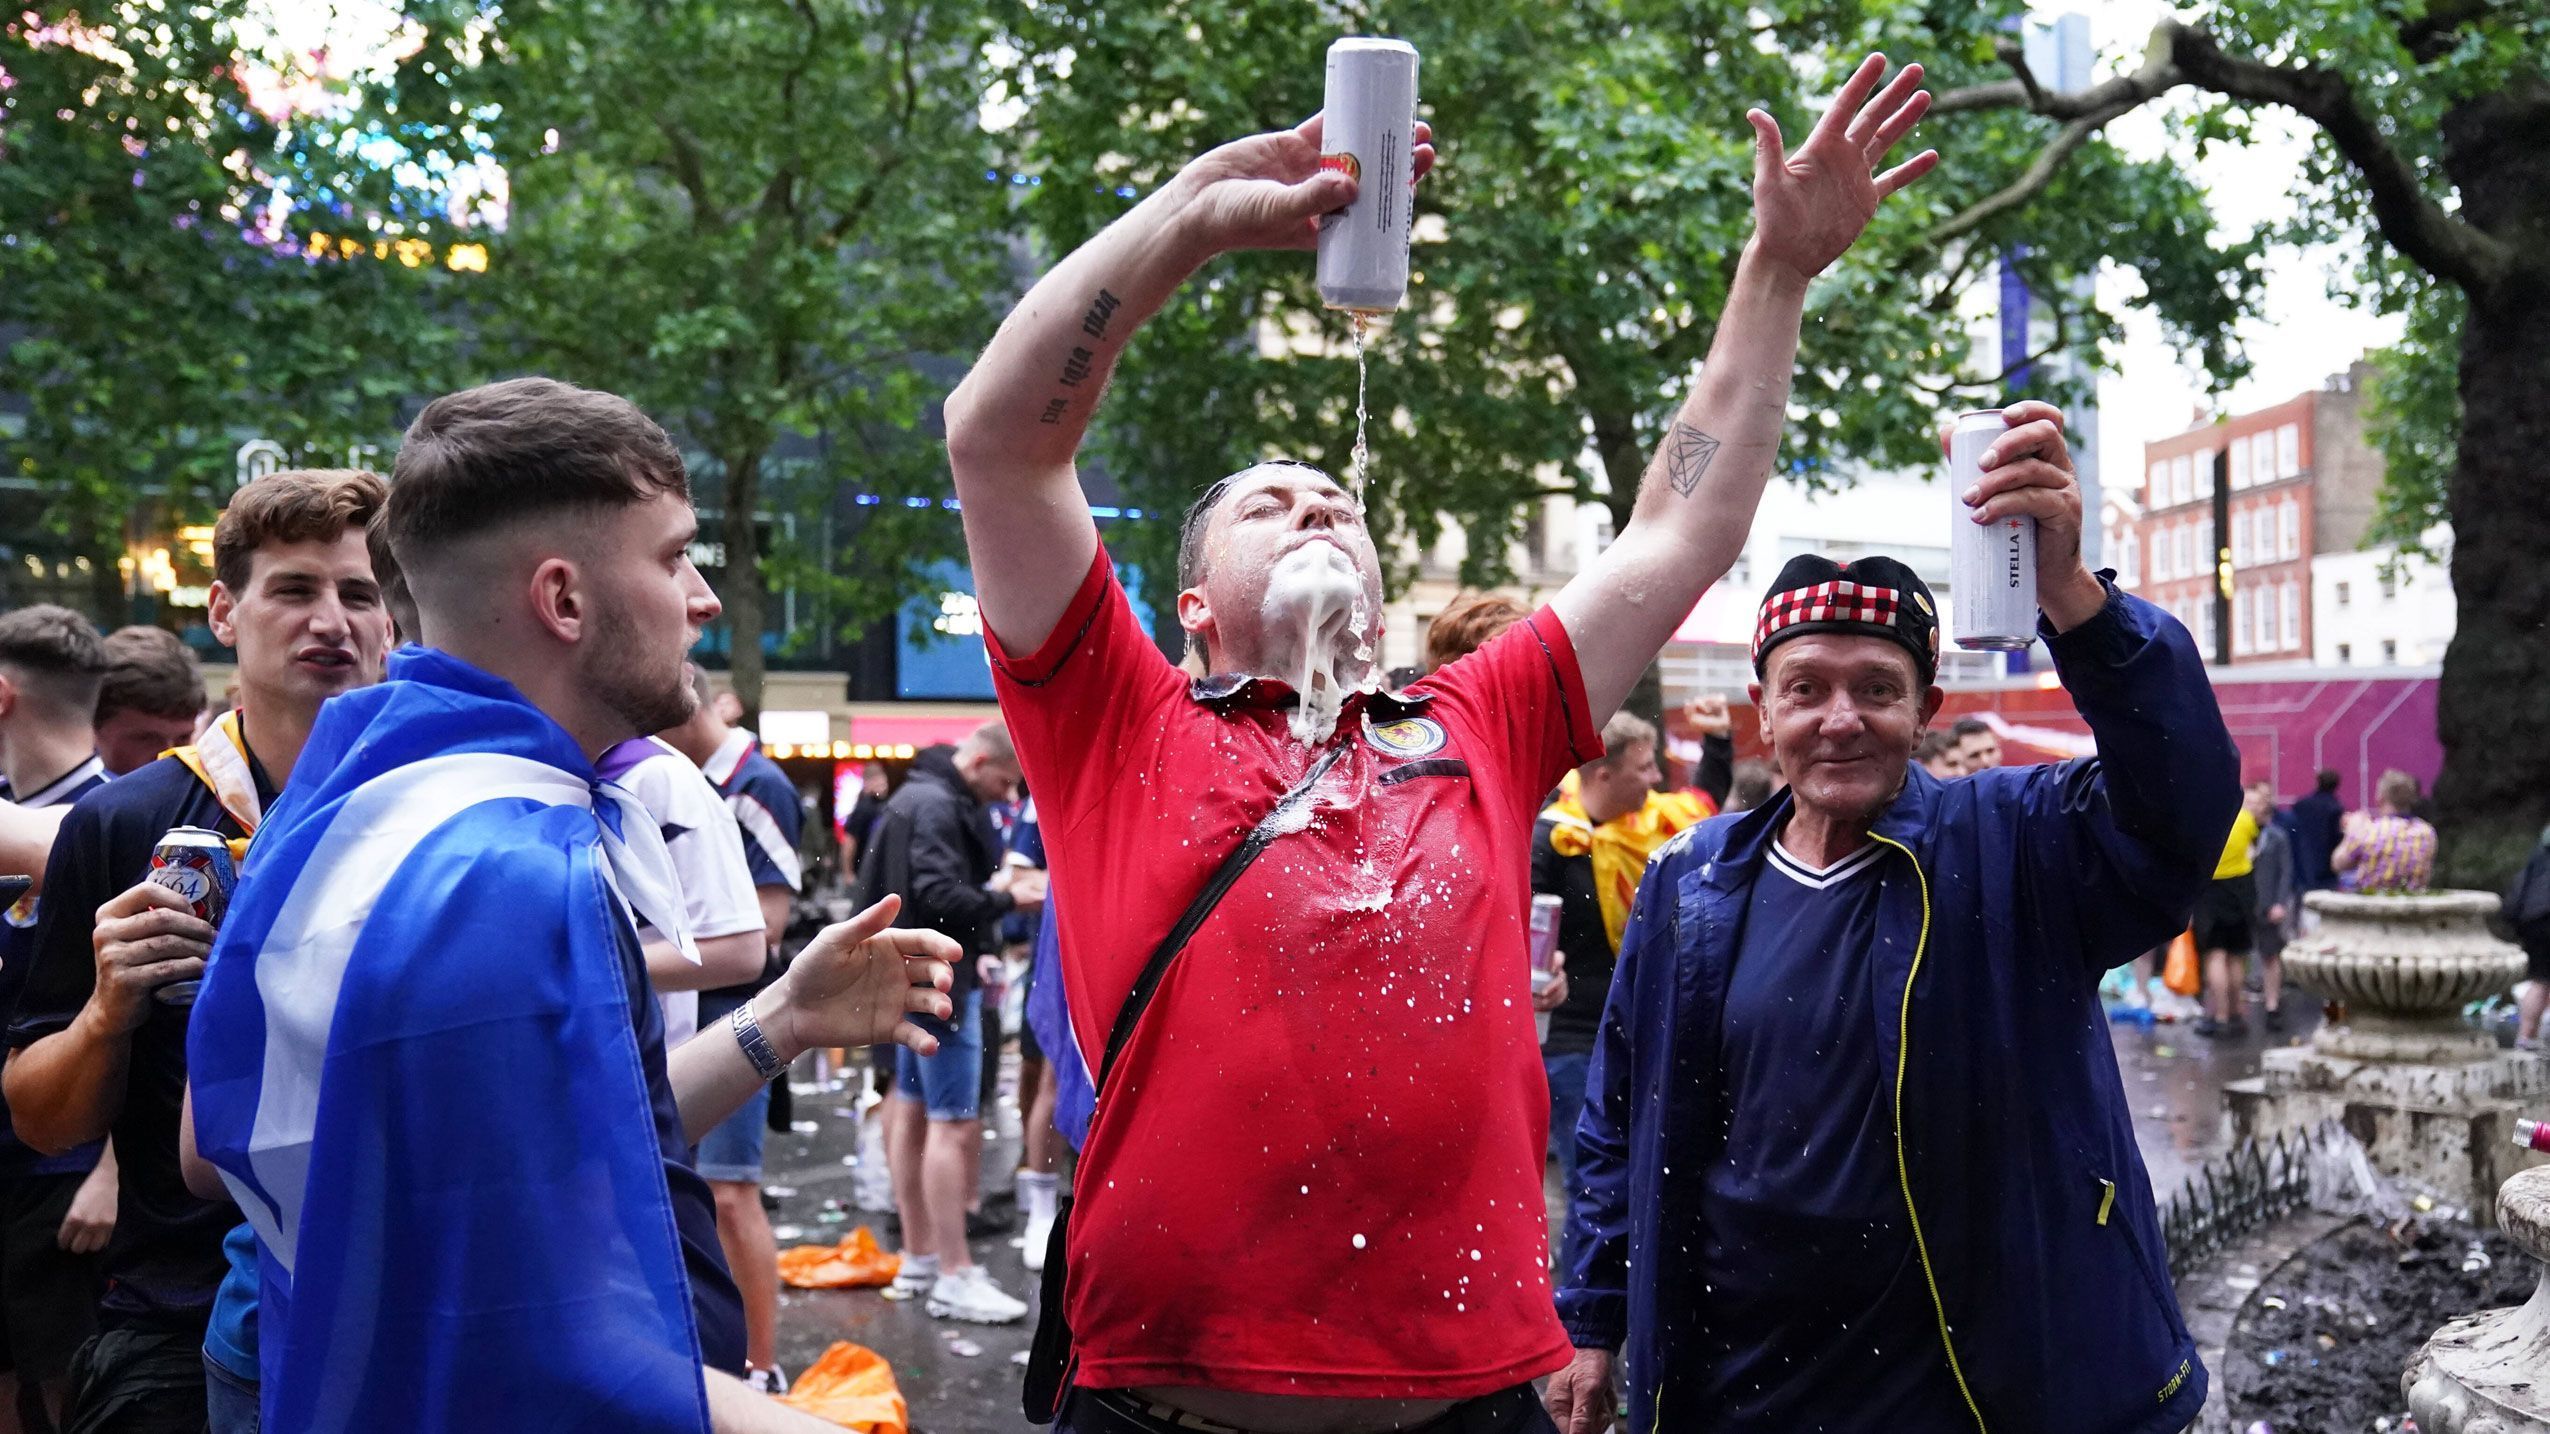 
                <strong>"Battle of Britain" - So verrückt feierten die Fans</strong><br>
                Die schottischen und englischen Anhänger zogen vor dem leider torlosen Spiel zu tausenden durch die Londoner Innenstadt und stimmen sich auf das Spiel ein. Die Stimmung ist ausgelassen und Alkohol fließt reichlich - standesgemäß! ran.de zeigt euch die verrücktesten Fan-Bilder aus der englischen Hauptstadt.
              